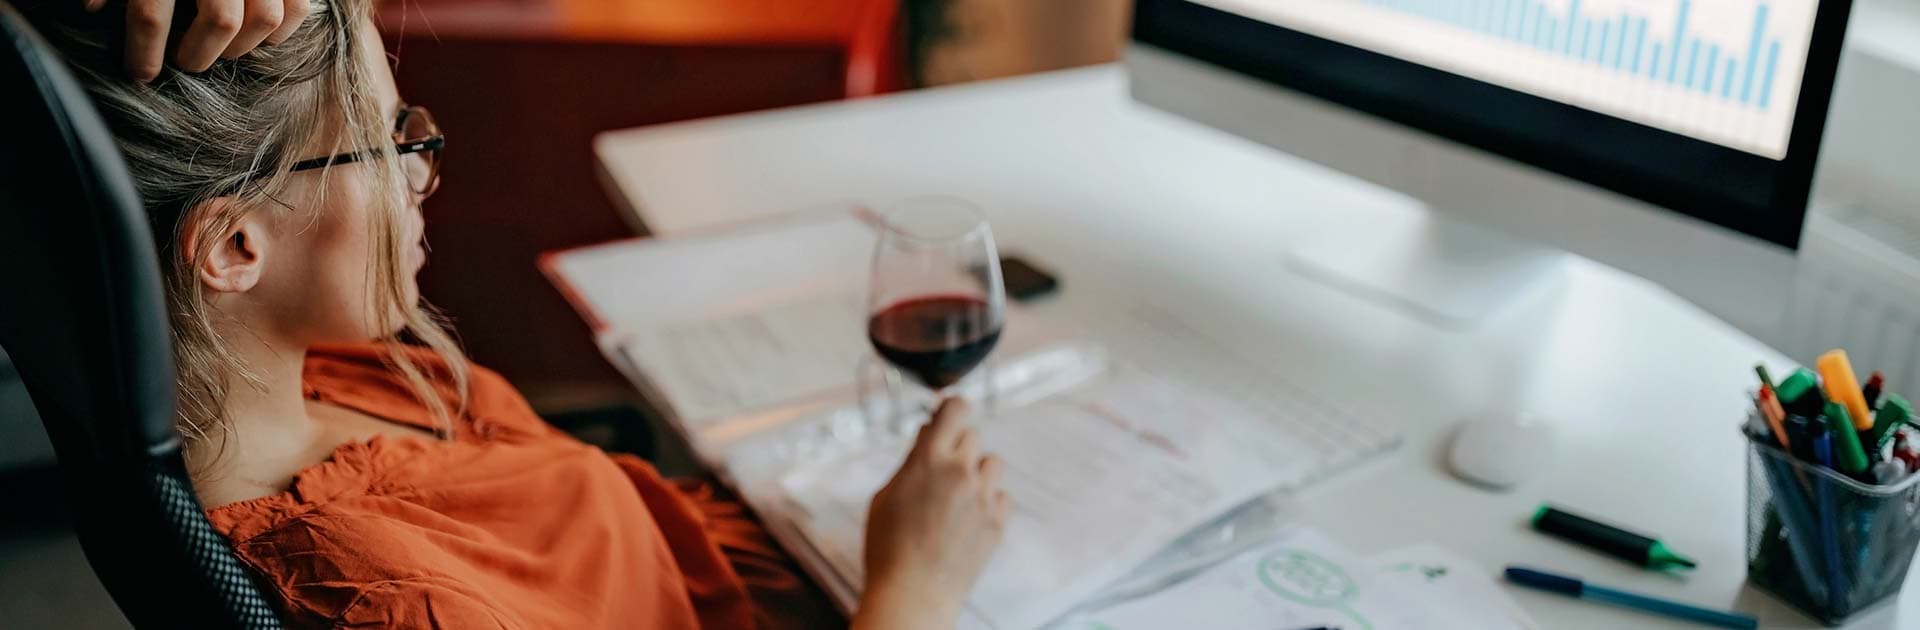 Eine Frau sitzt an einem Schreibtisch und schaut auf ein Diagram auf einem PC. Die hält ein Glas Rotwein in der Hand.